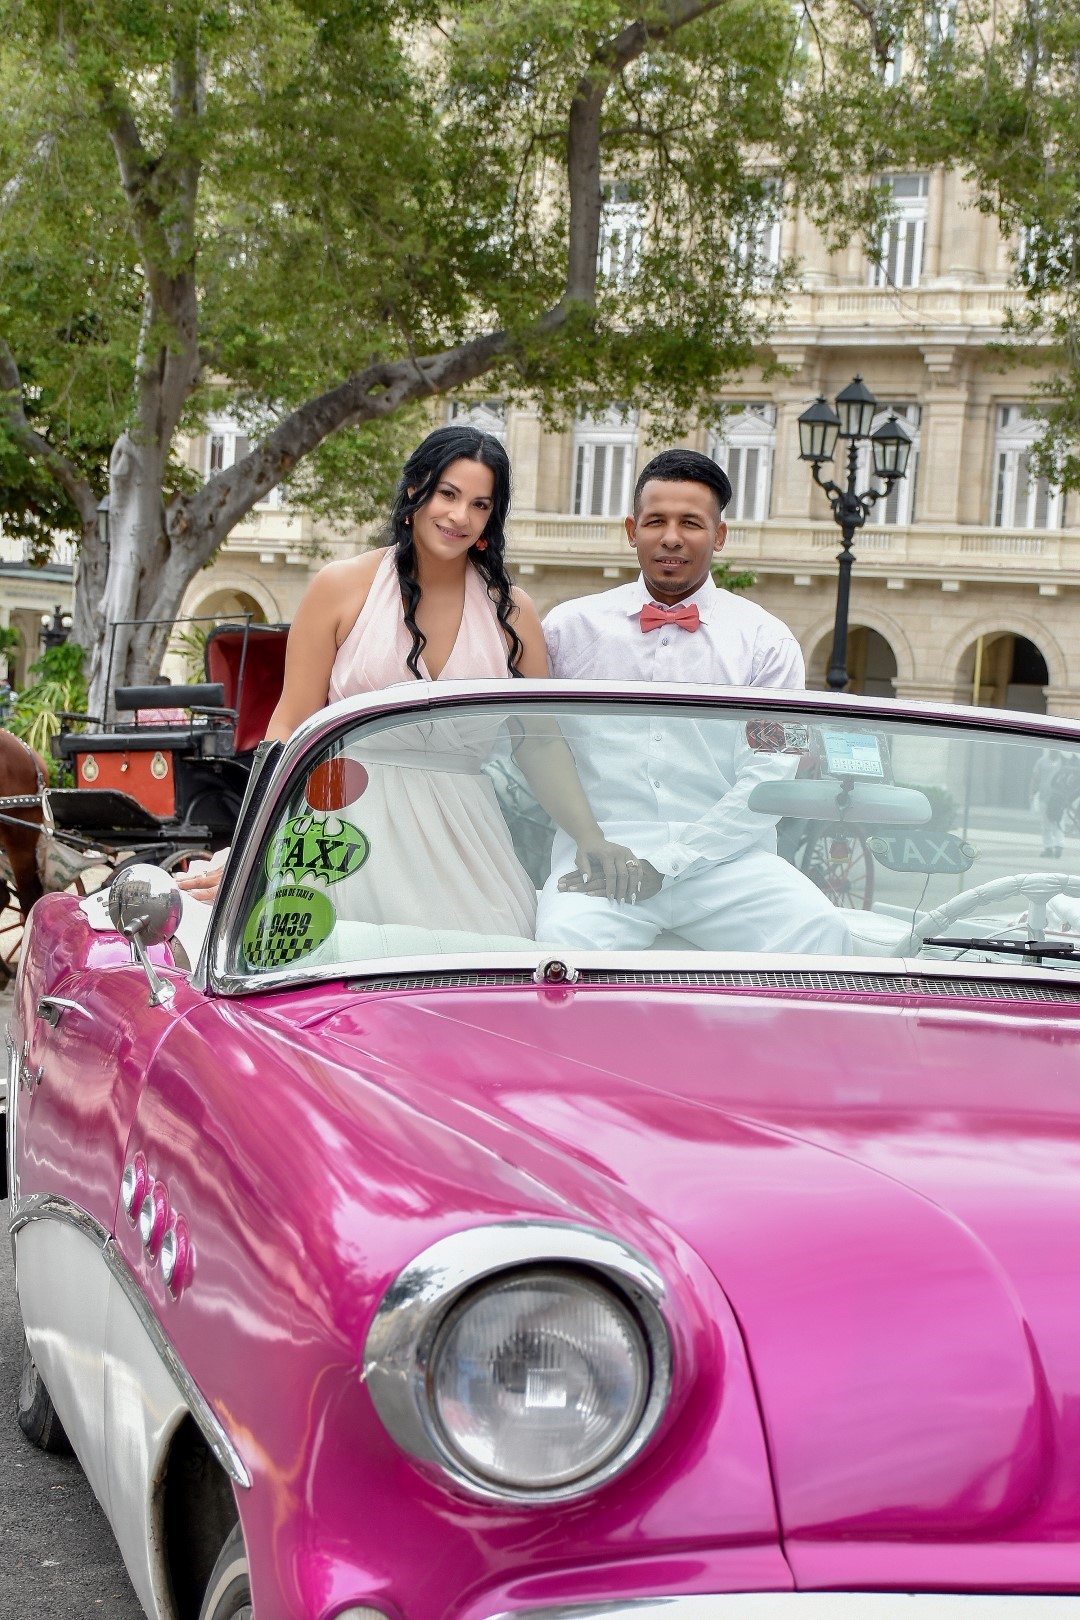 tradição de andar de carro em casamentos cubanos